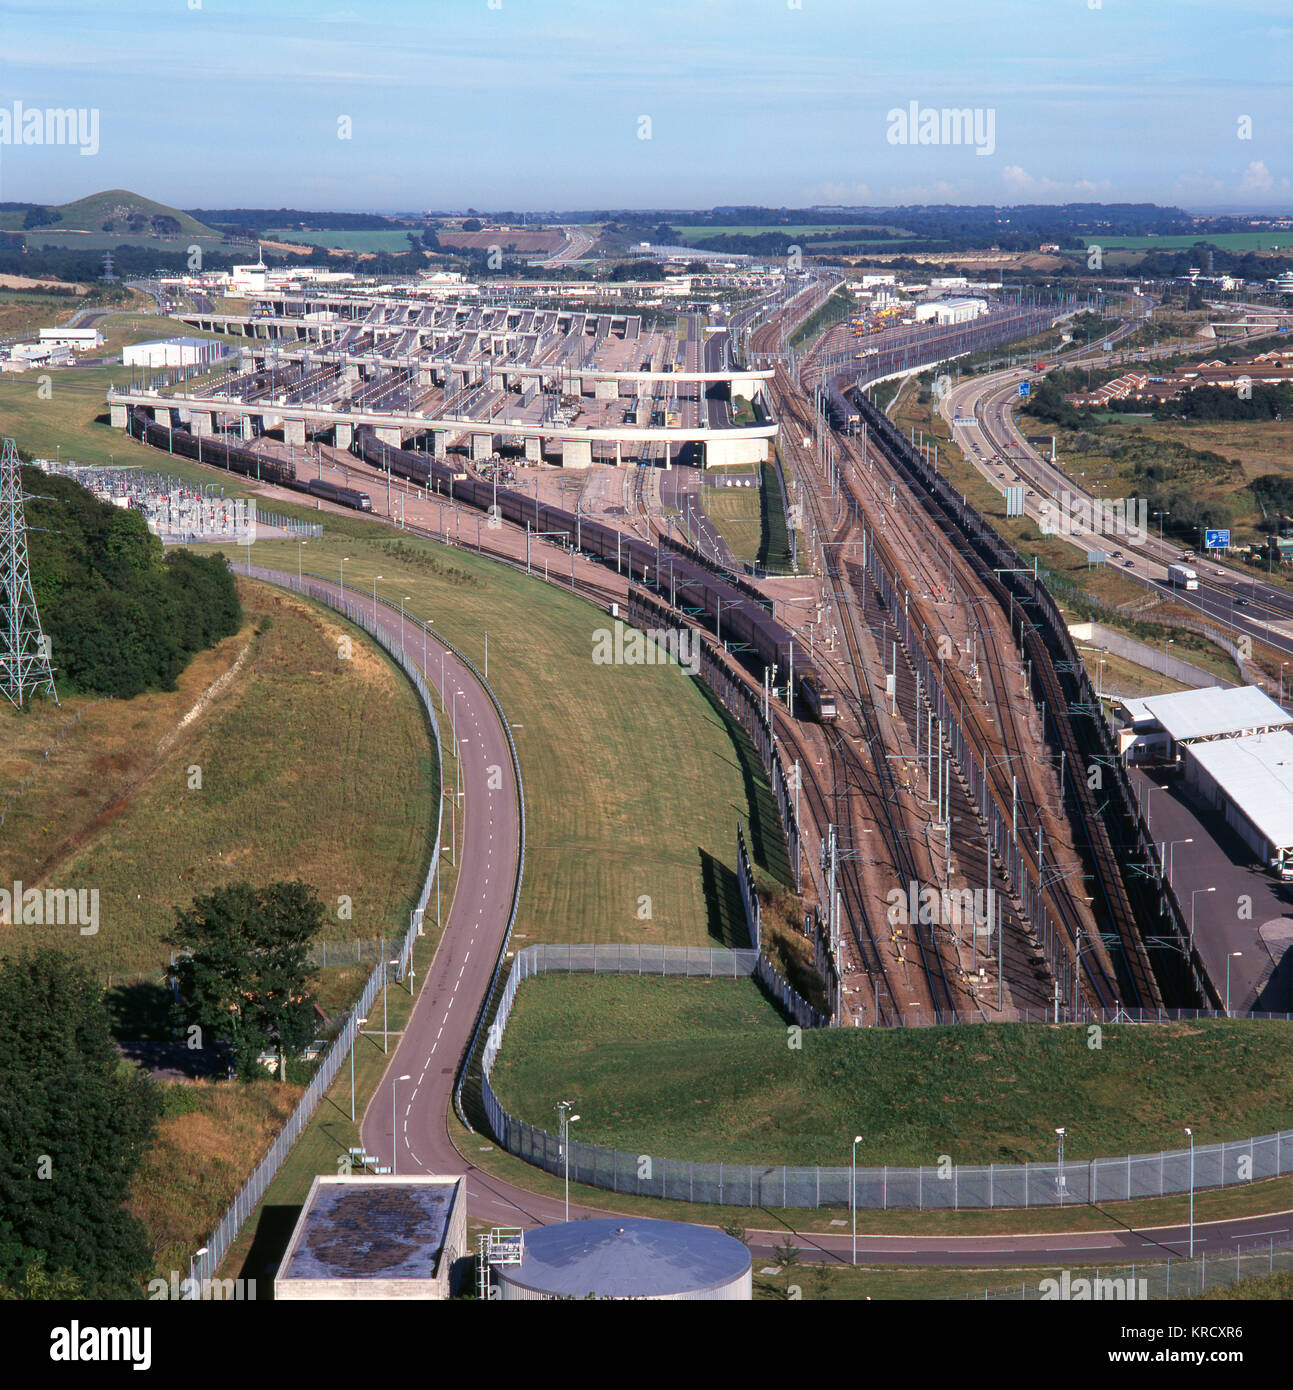 Terminal del tunnel della Manica a Folkestone, Kent, Inghilterra - vista dall'alto dell'entrata del tunnel, che mostra un treno Eurostar in partenza. Foto Stock